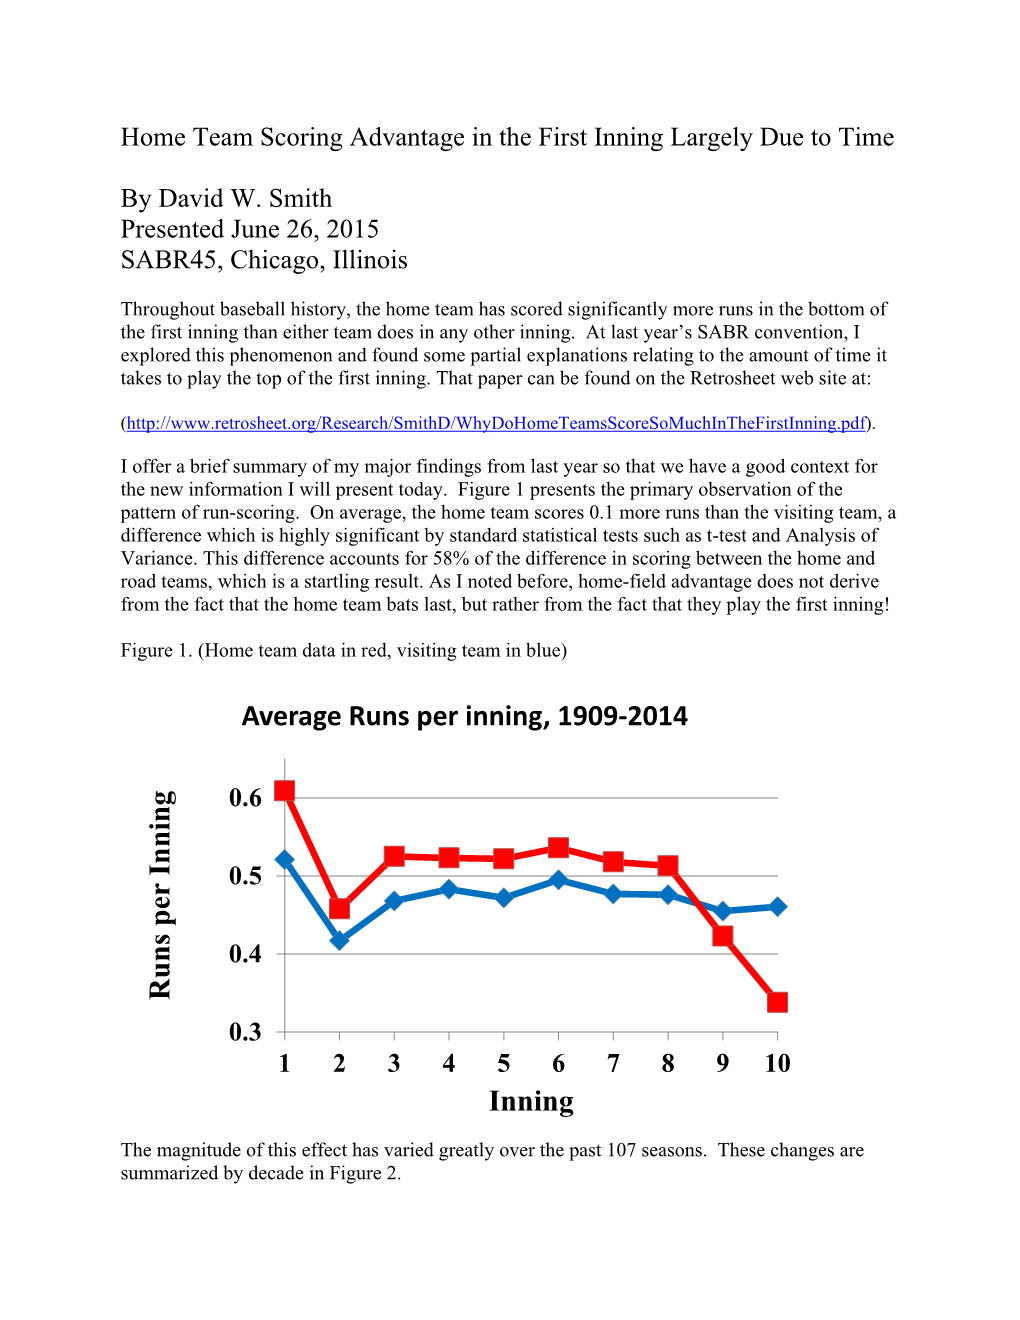 Runs Per Inning Inning Average Runs Per Inning, 1909-2014